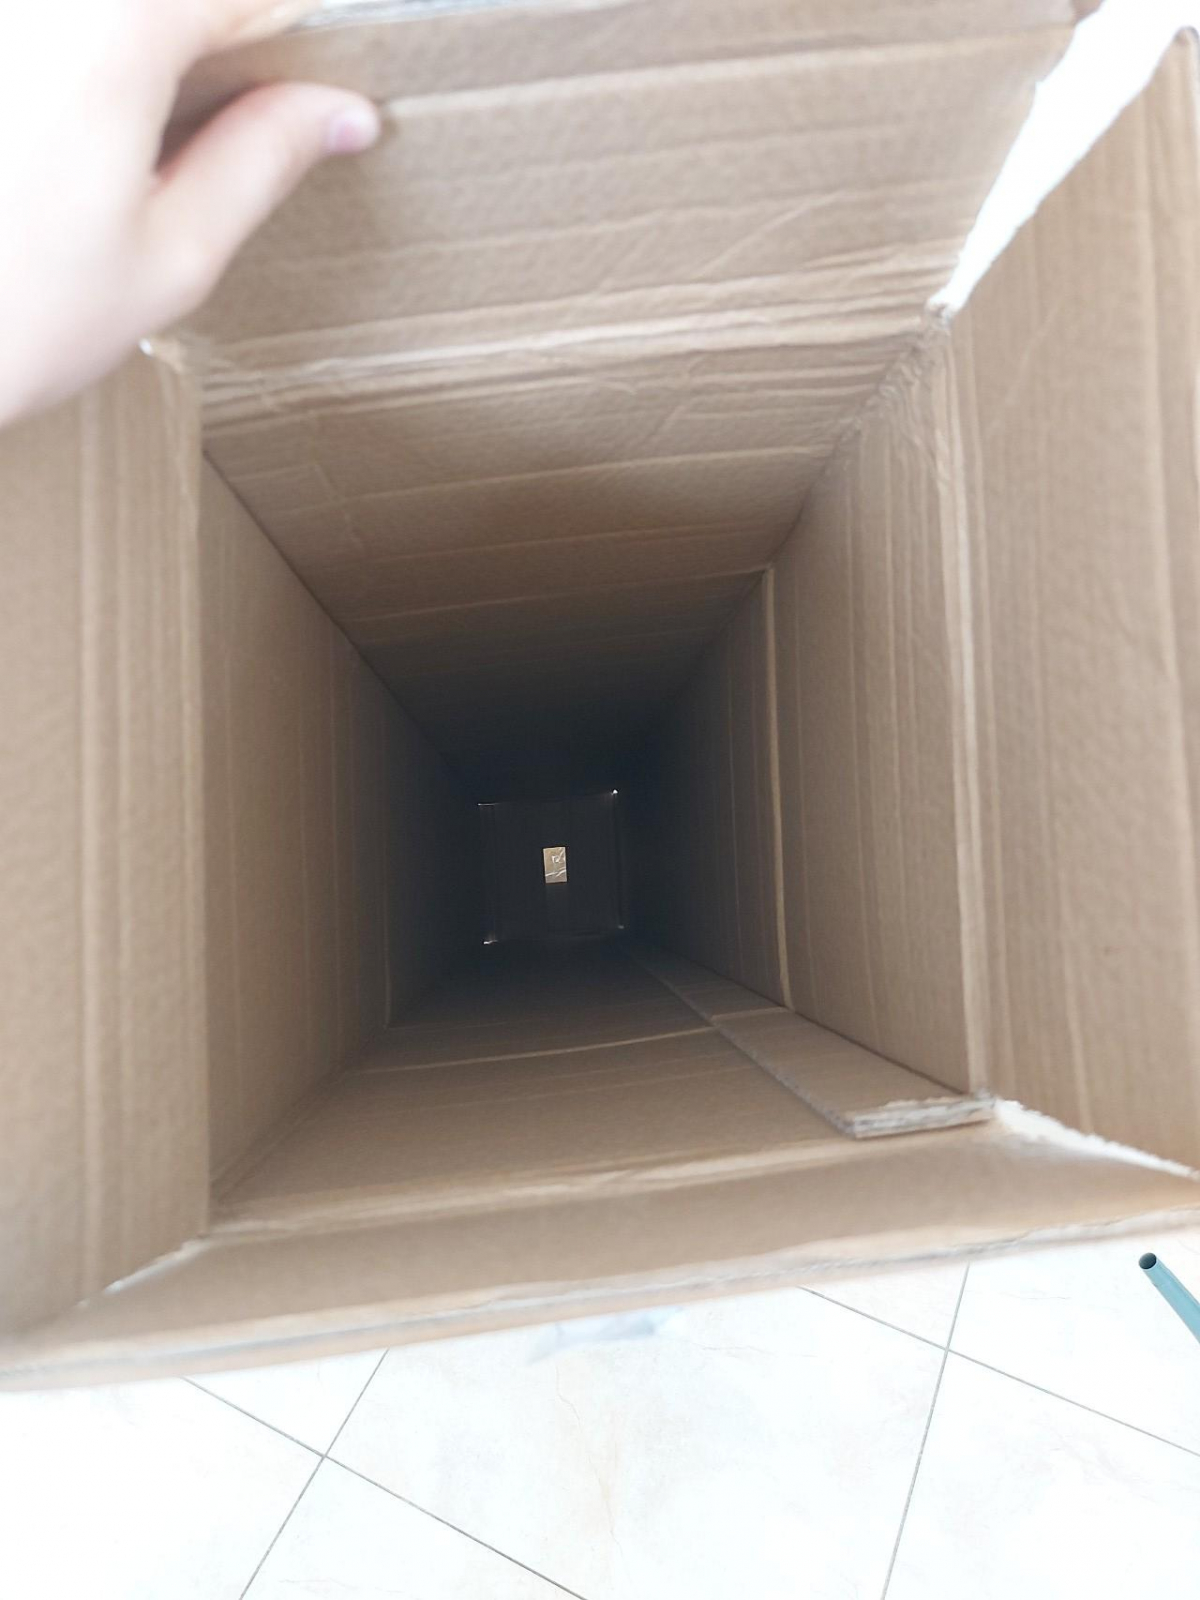 Kartonová krabice za odvoz. cca 155x23x23 cm;
konkrétni místo předání sdělím pouze vážným zájemcům